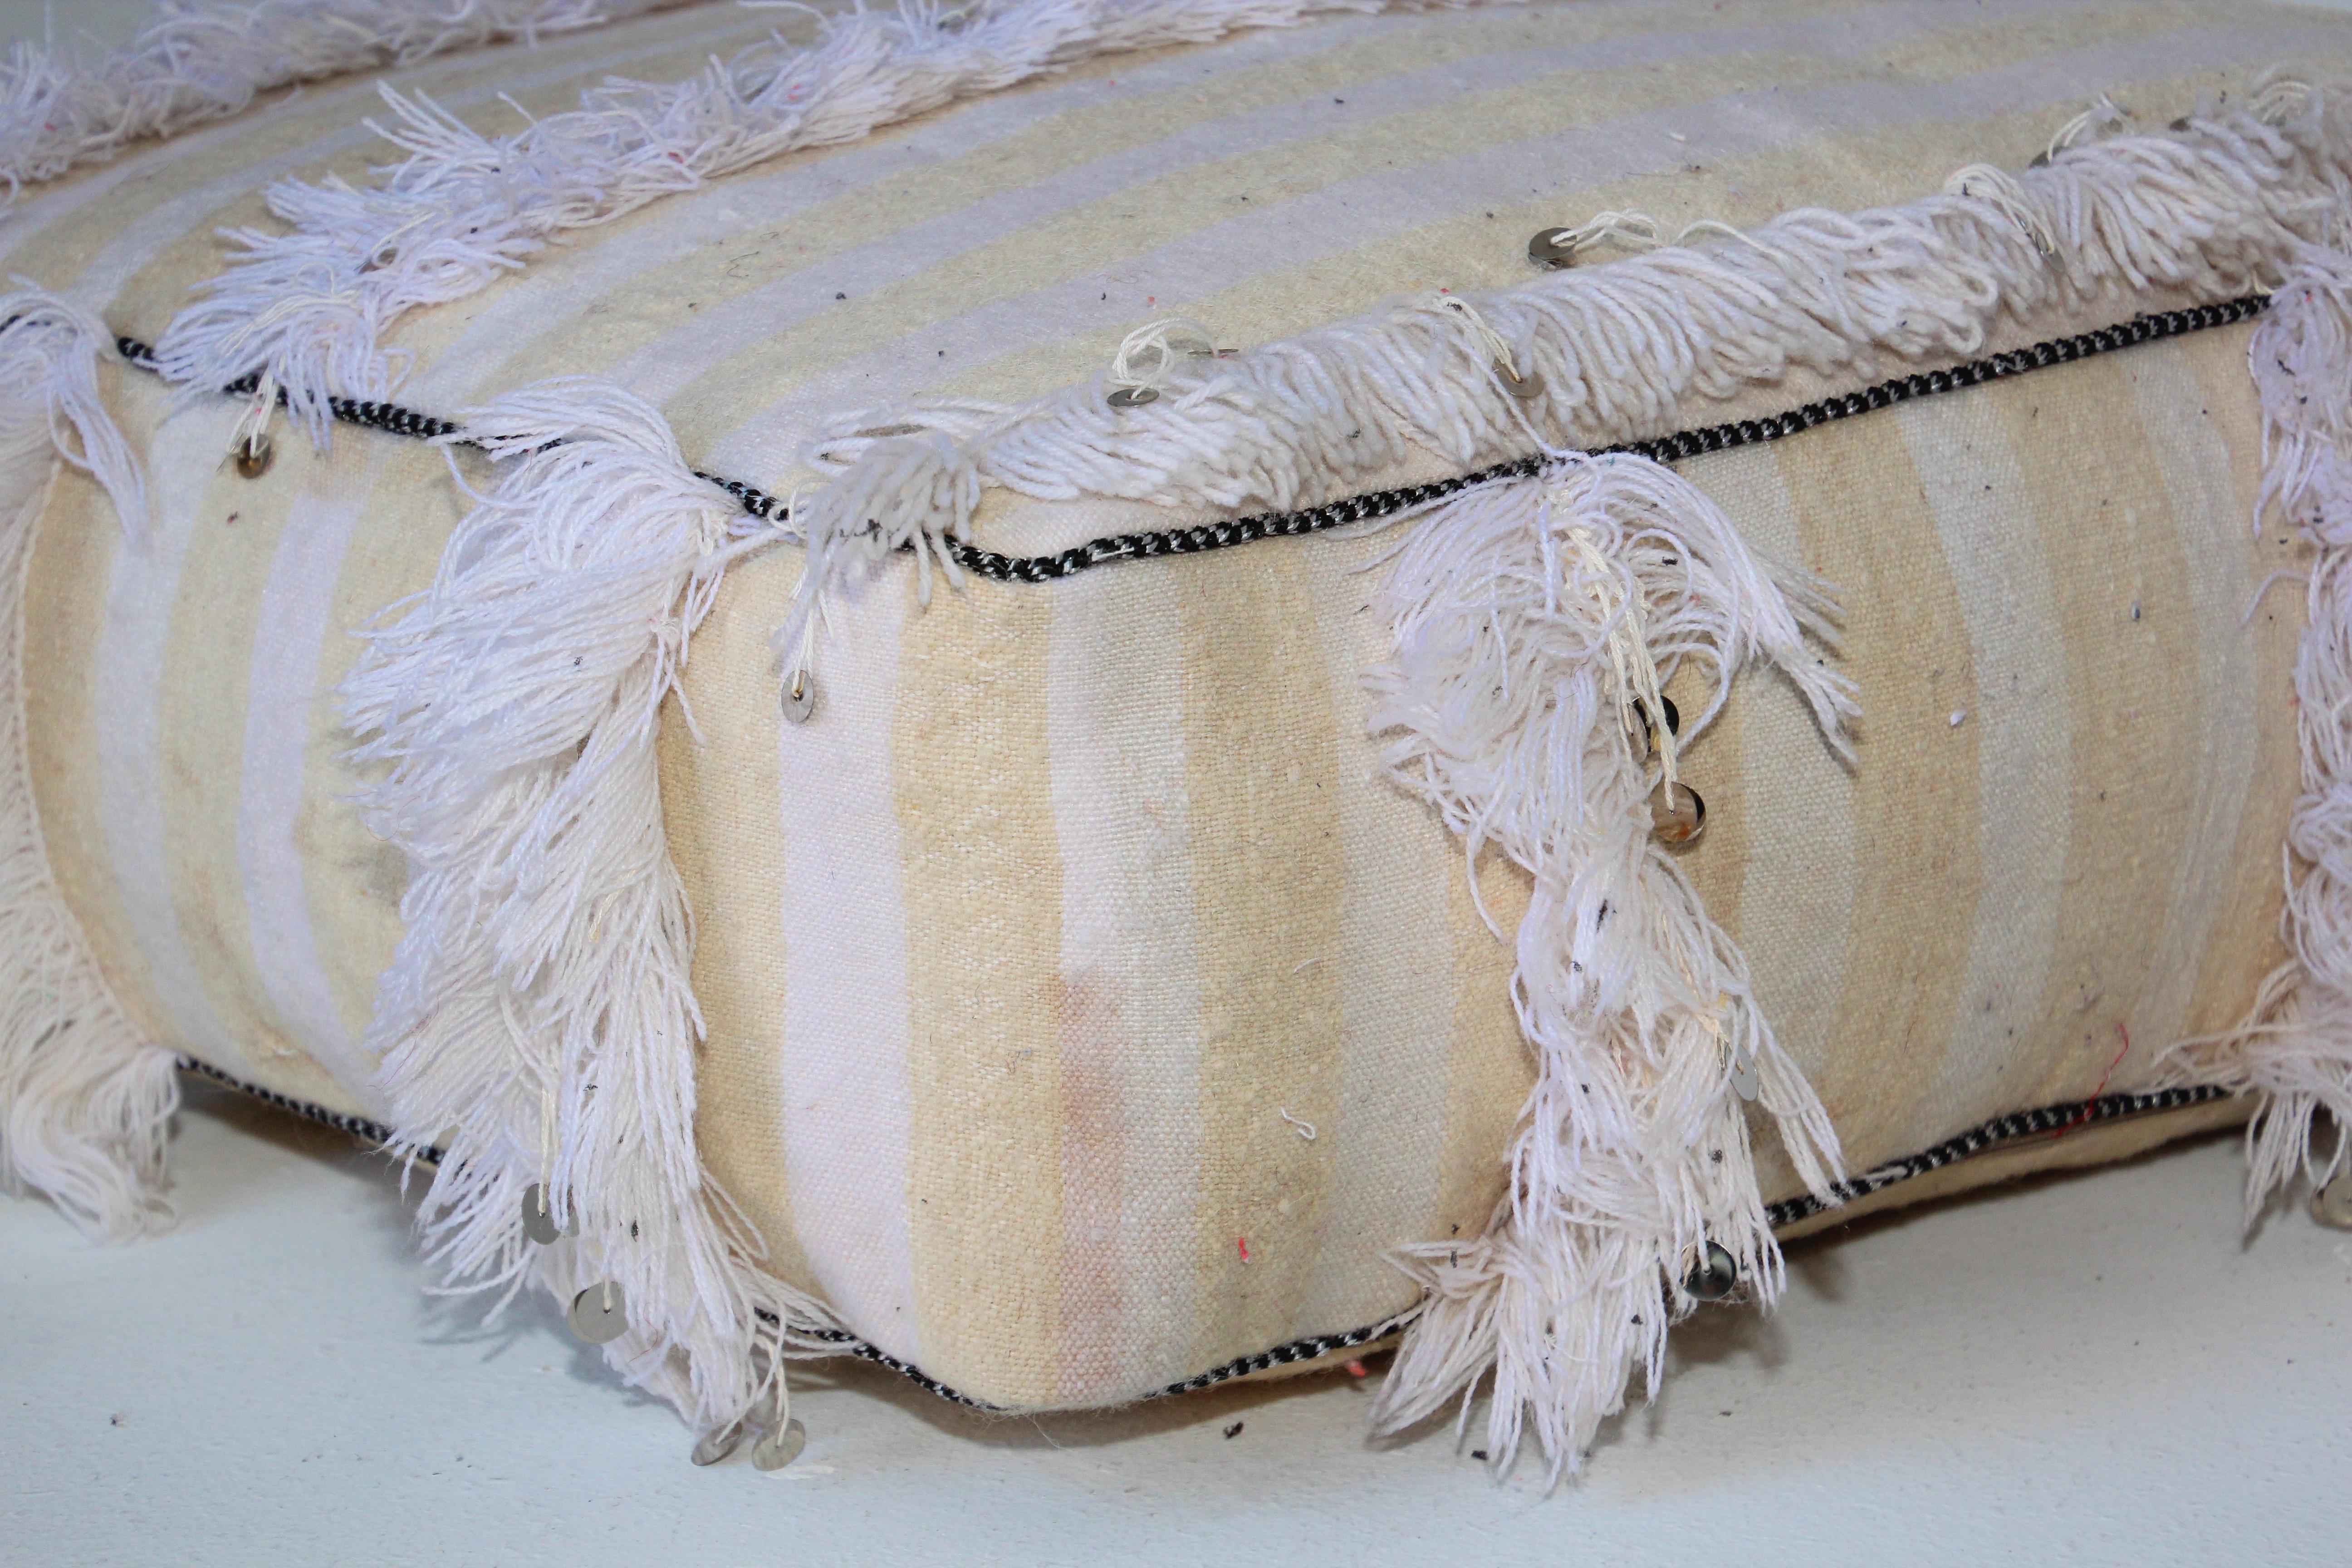 Coussin de sol marocain pouf bohème avec paillettes argentées et longues franges.
Ce coussin ou pouf de sol marocain vintage boho tribal est fabriqué à partir d'un jeté traditionnel en laine et coton blanc tissé à la main, utilisé par les femmes